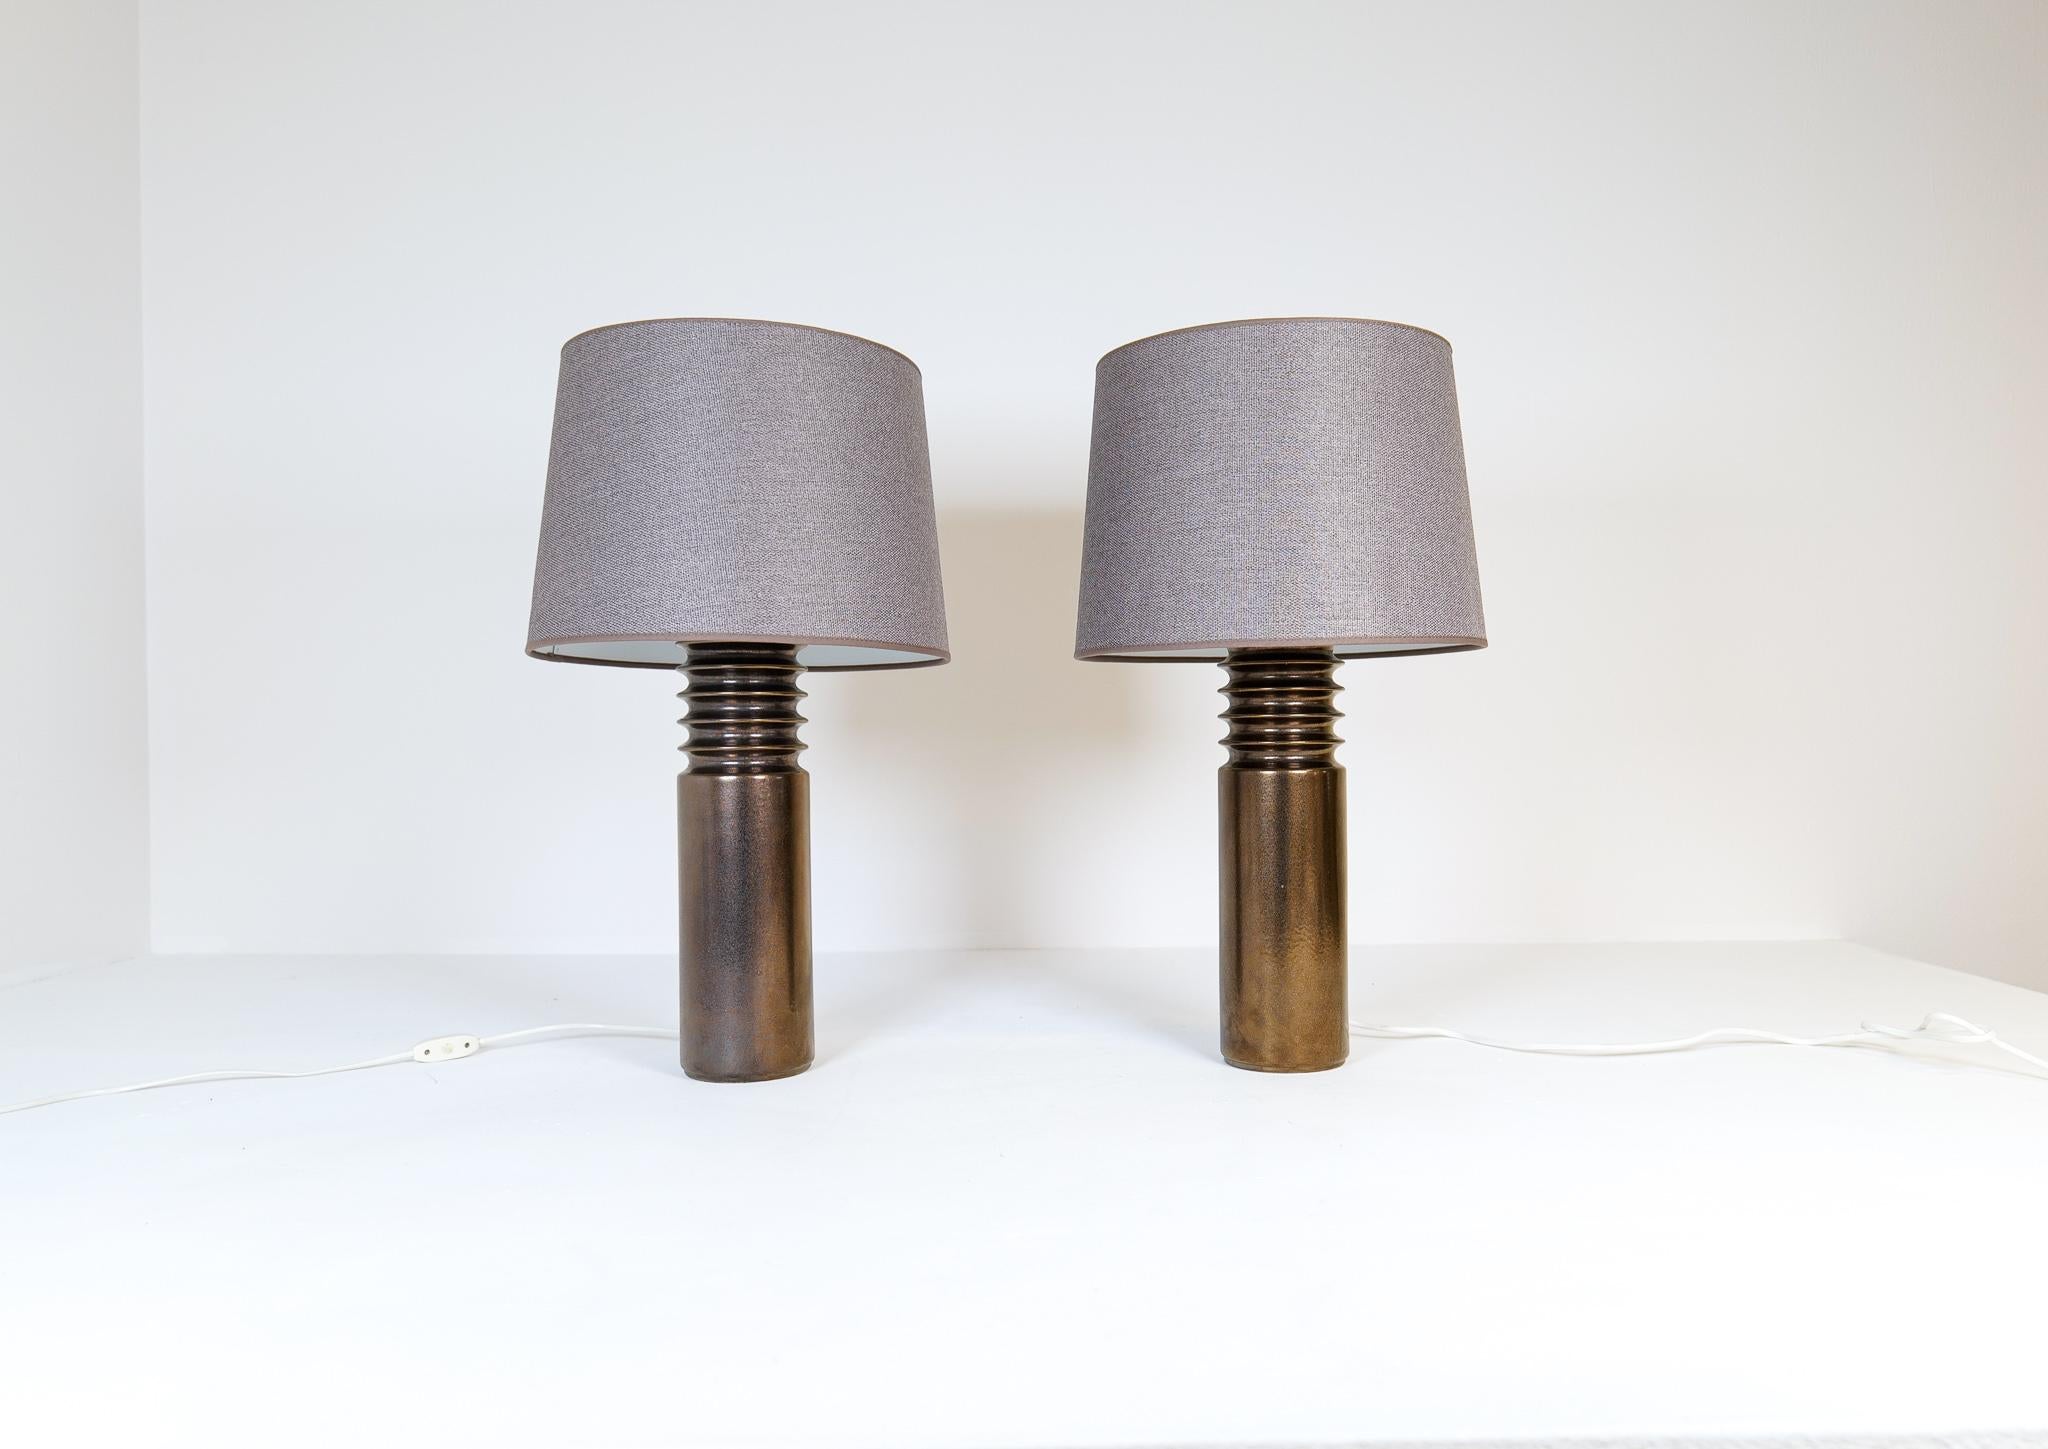 Ces lampes de table modernes du milieu du siècle ont été fabriquées en Suède pour Luxus. 
Les lampes sont fabriquées en céramique de couleur bronze/or avec de nouveaux abat-jour de qualité fabriqués en Suède. 
Look sculptural et typique du début des